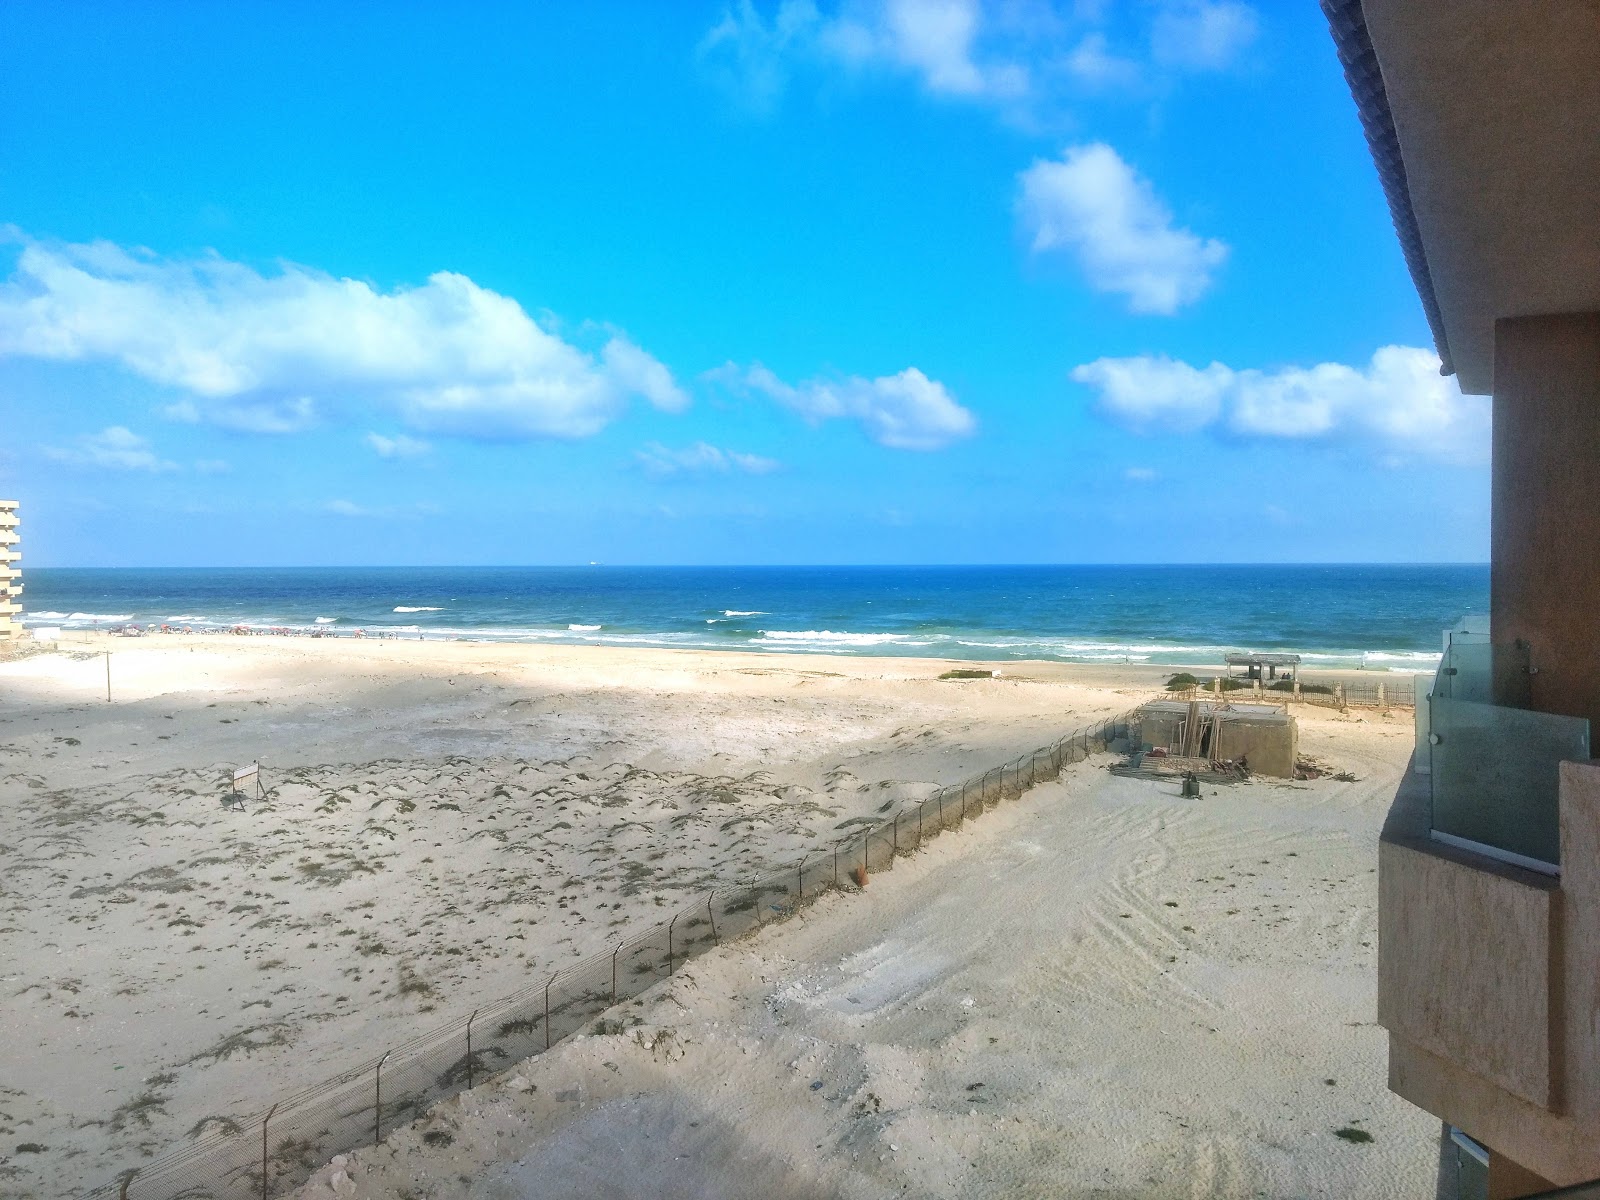 Abu Yusif beach photo #9